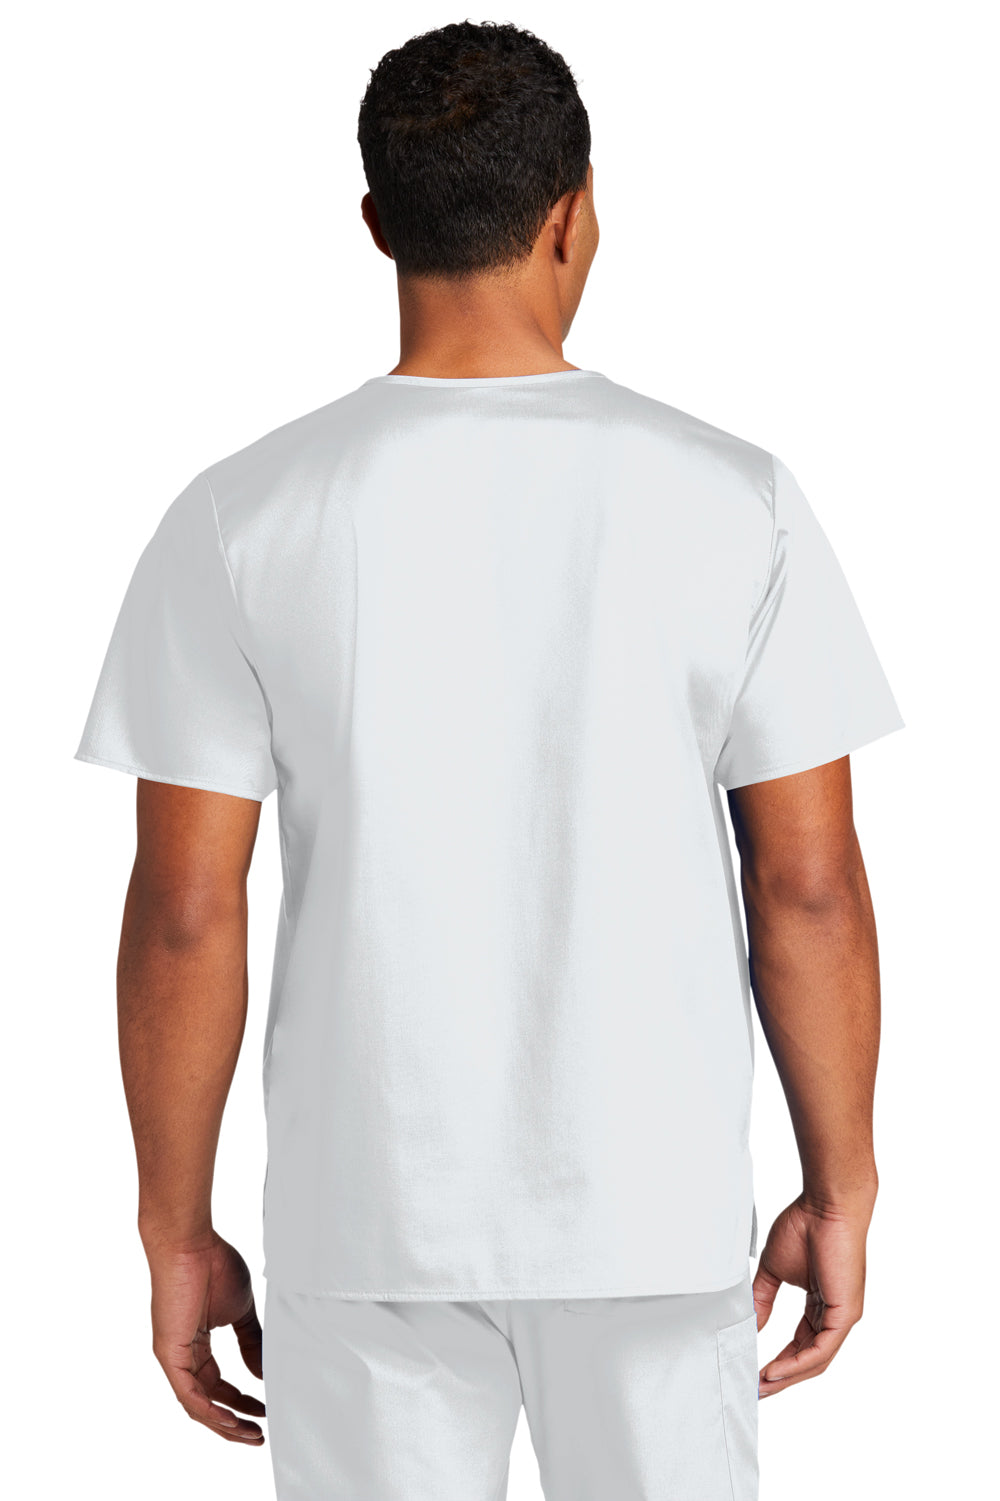 Wonderwink WW3160 WorkFlex Short Sleeve V-Neck Shirt w/ Pocket White Back